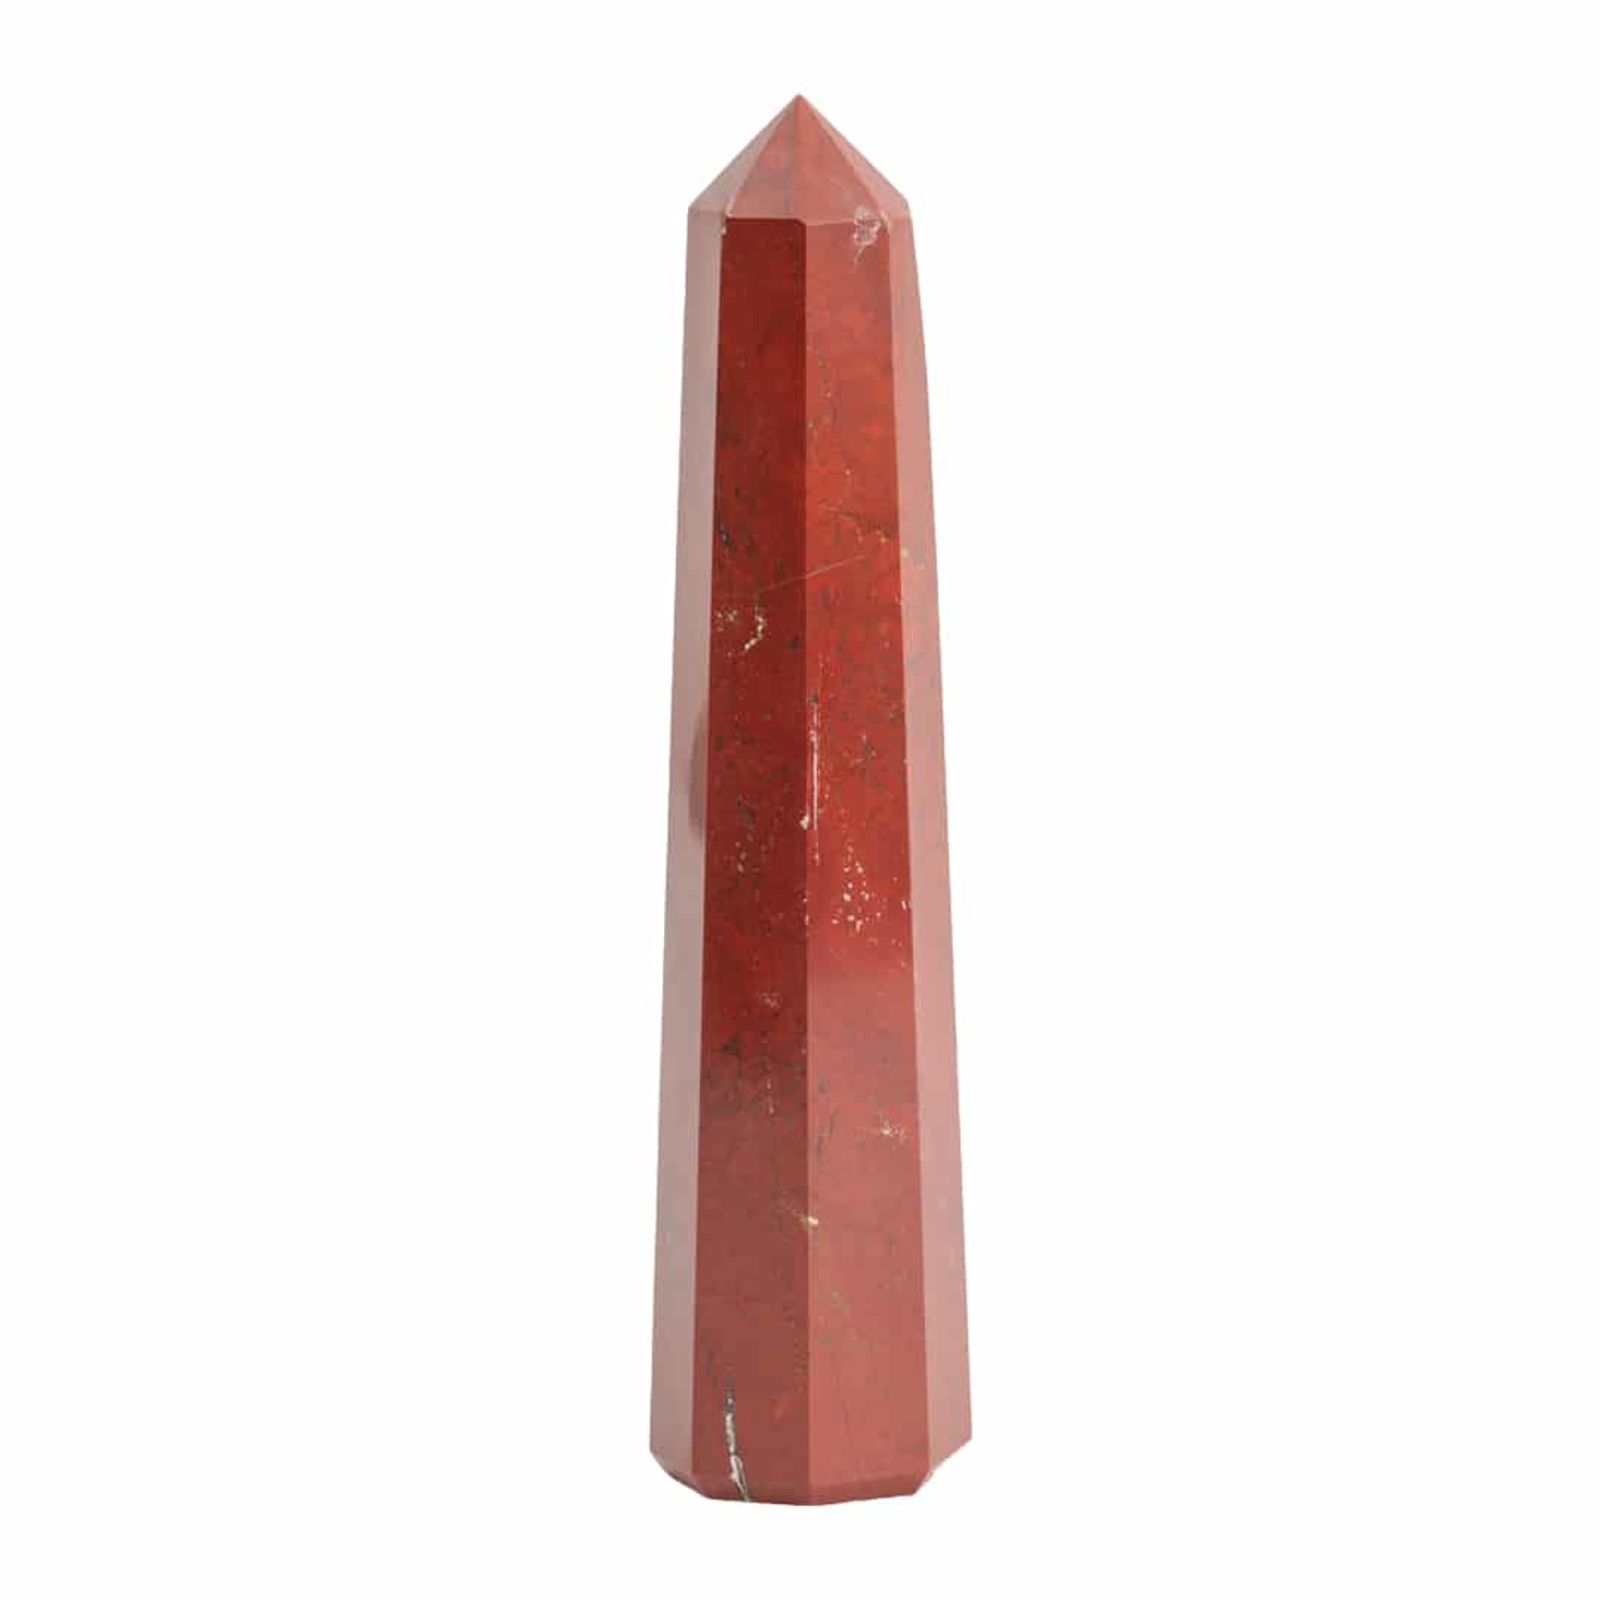 Edelstein Obelisk Roter Jaspis - 120-150 mm